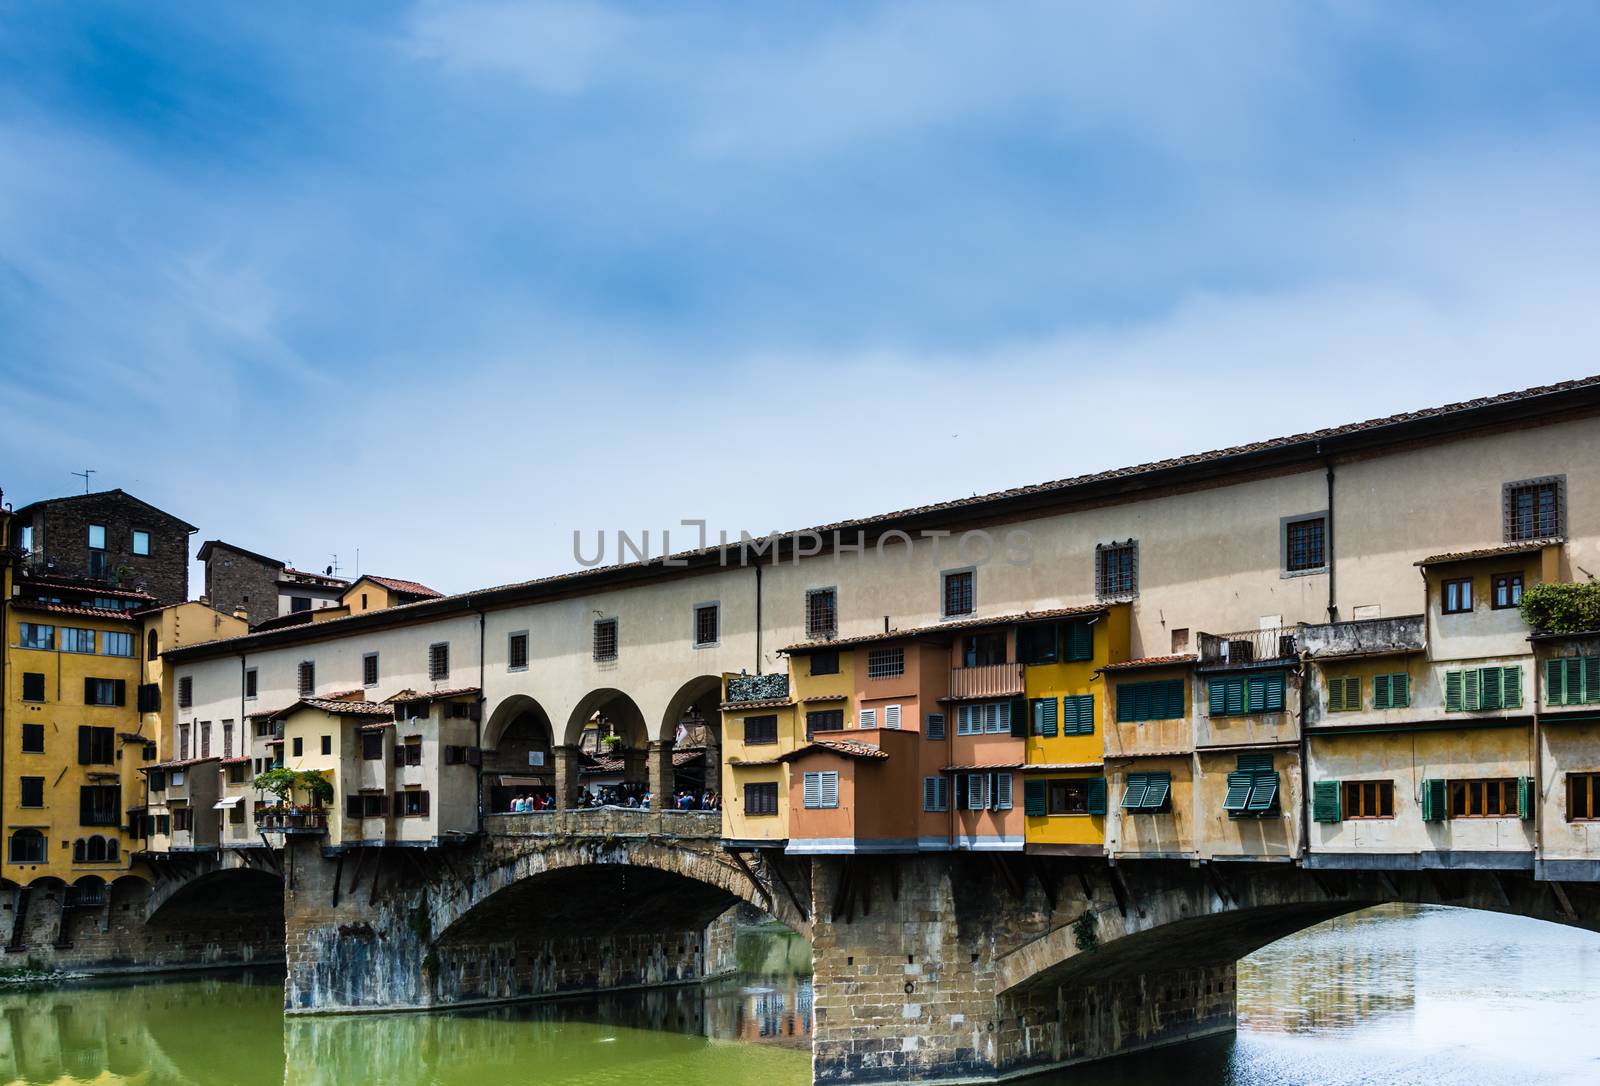 Ponte Vecchio in Florence by rarrarorro